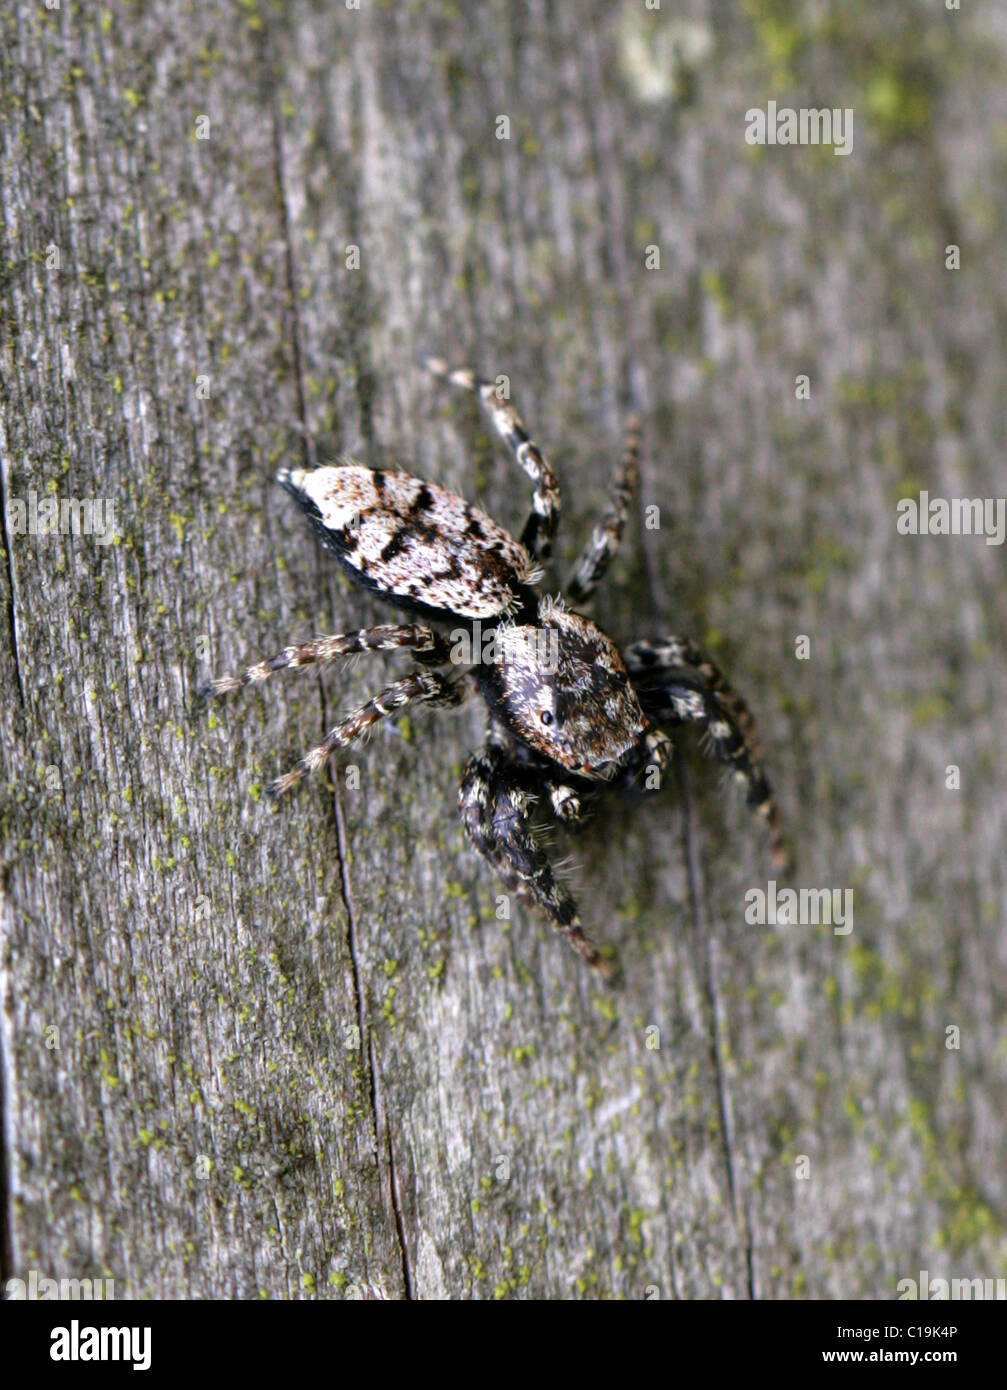 Zebra Jumping Spider, Salticus Scenicus, Araneae, Salticidae, Arachniden. Stockfoto